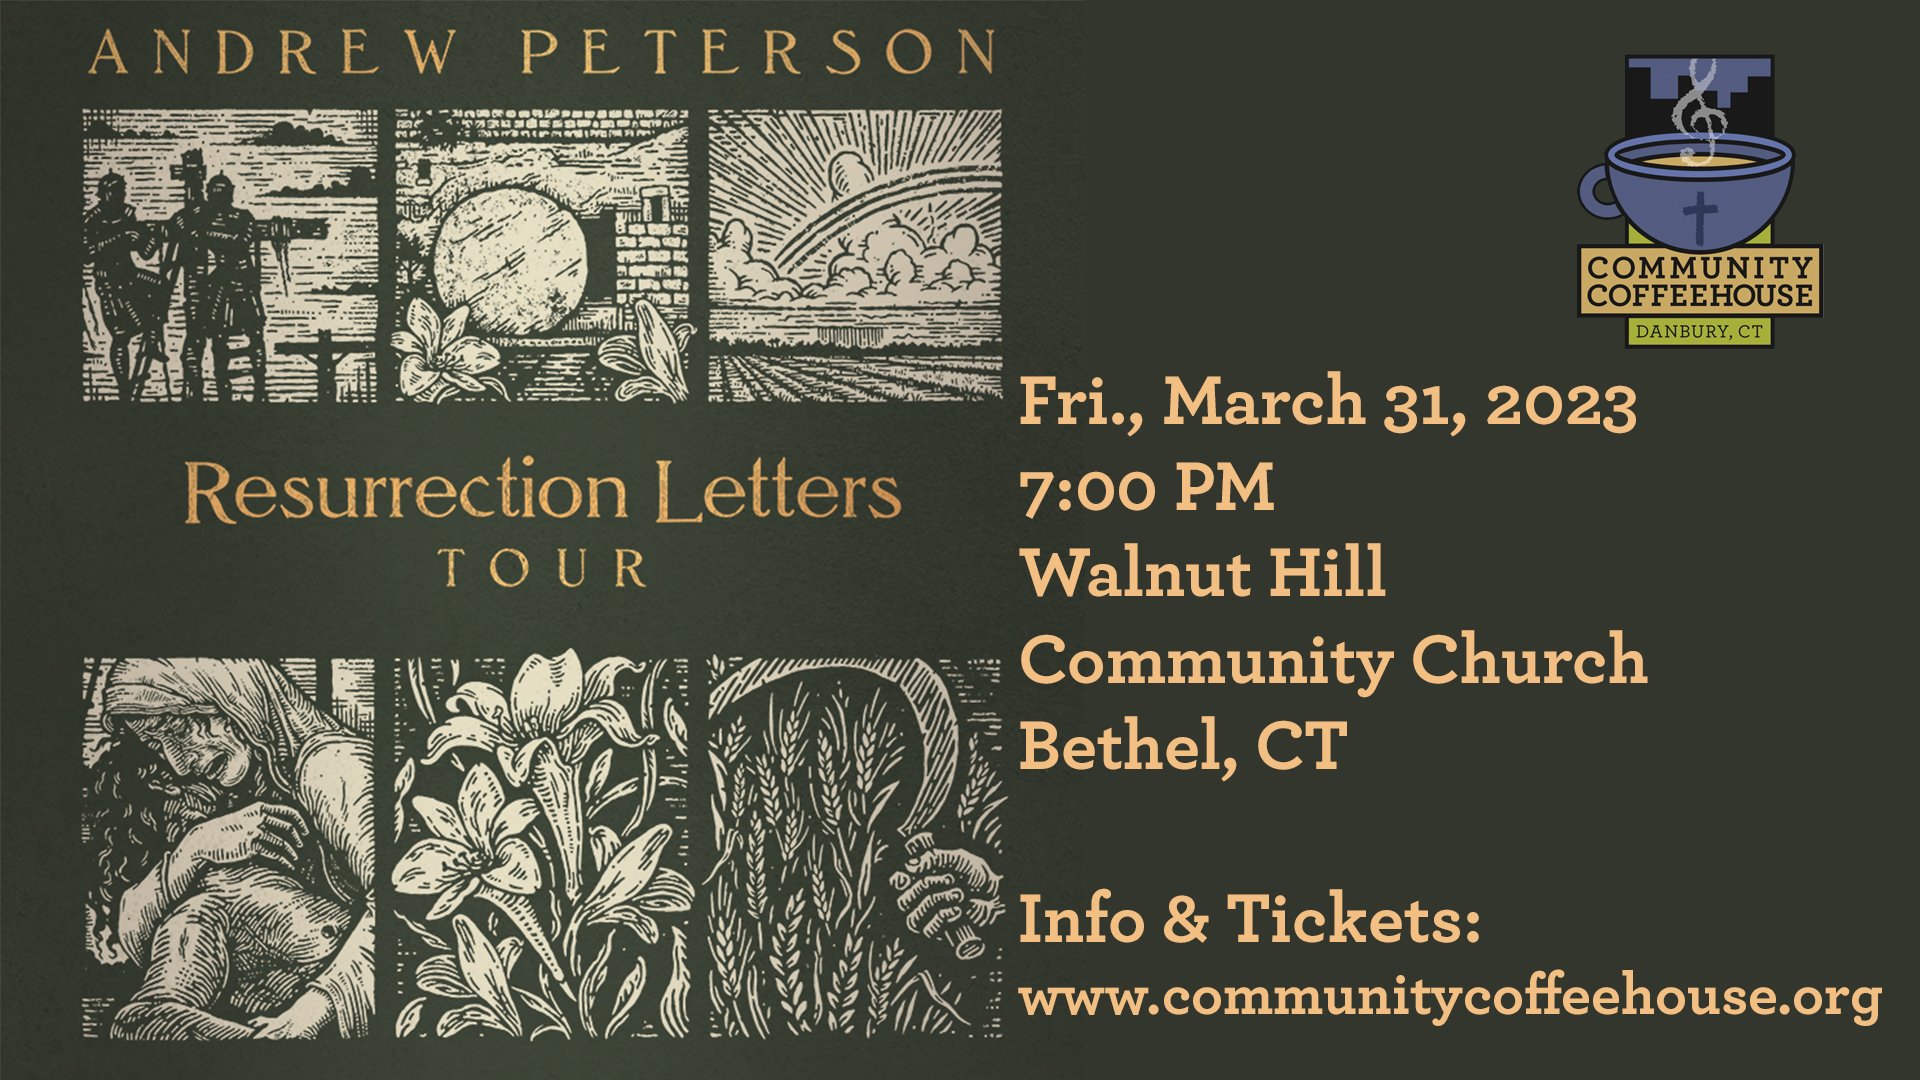 Andrew Peterson's Resurrection Letters Tour